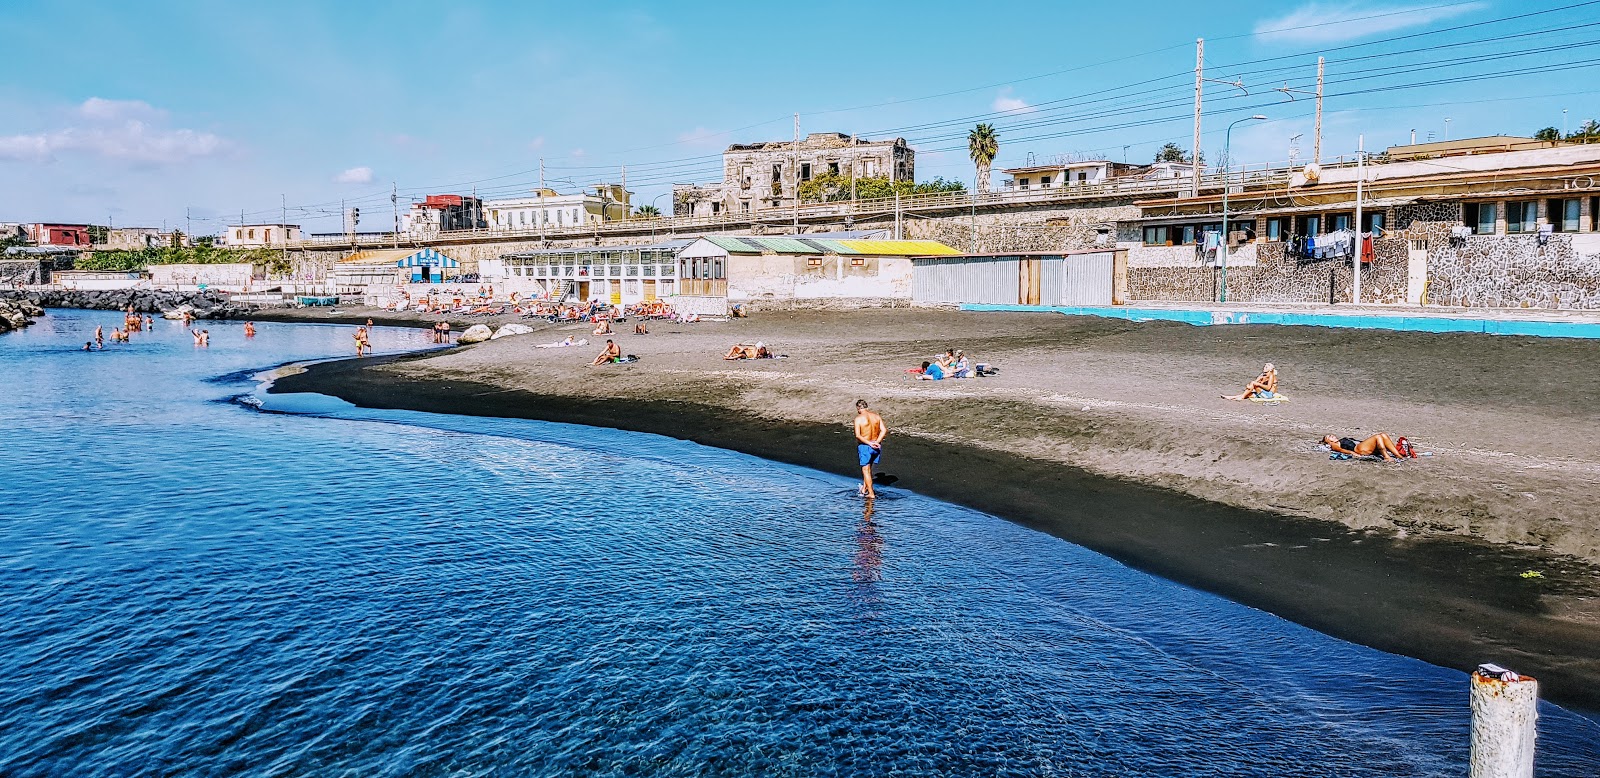 Foto van Spiaggia di via Calastro met blauw water oppervlakte